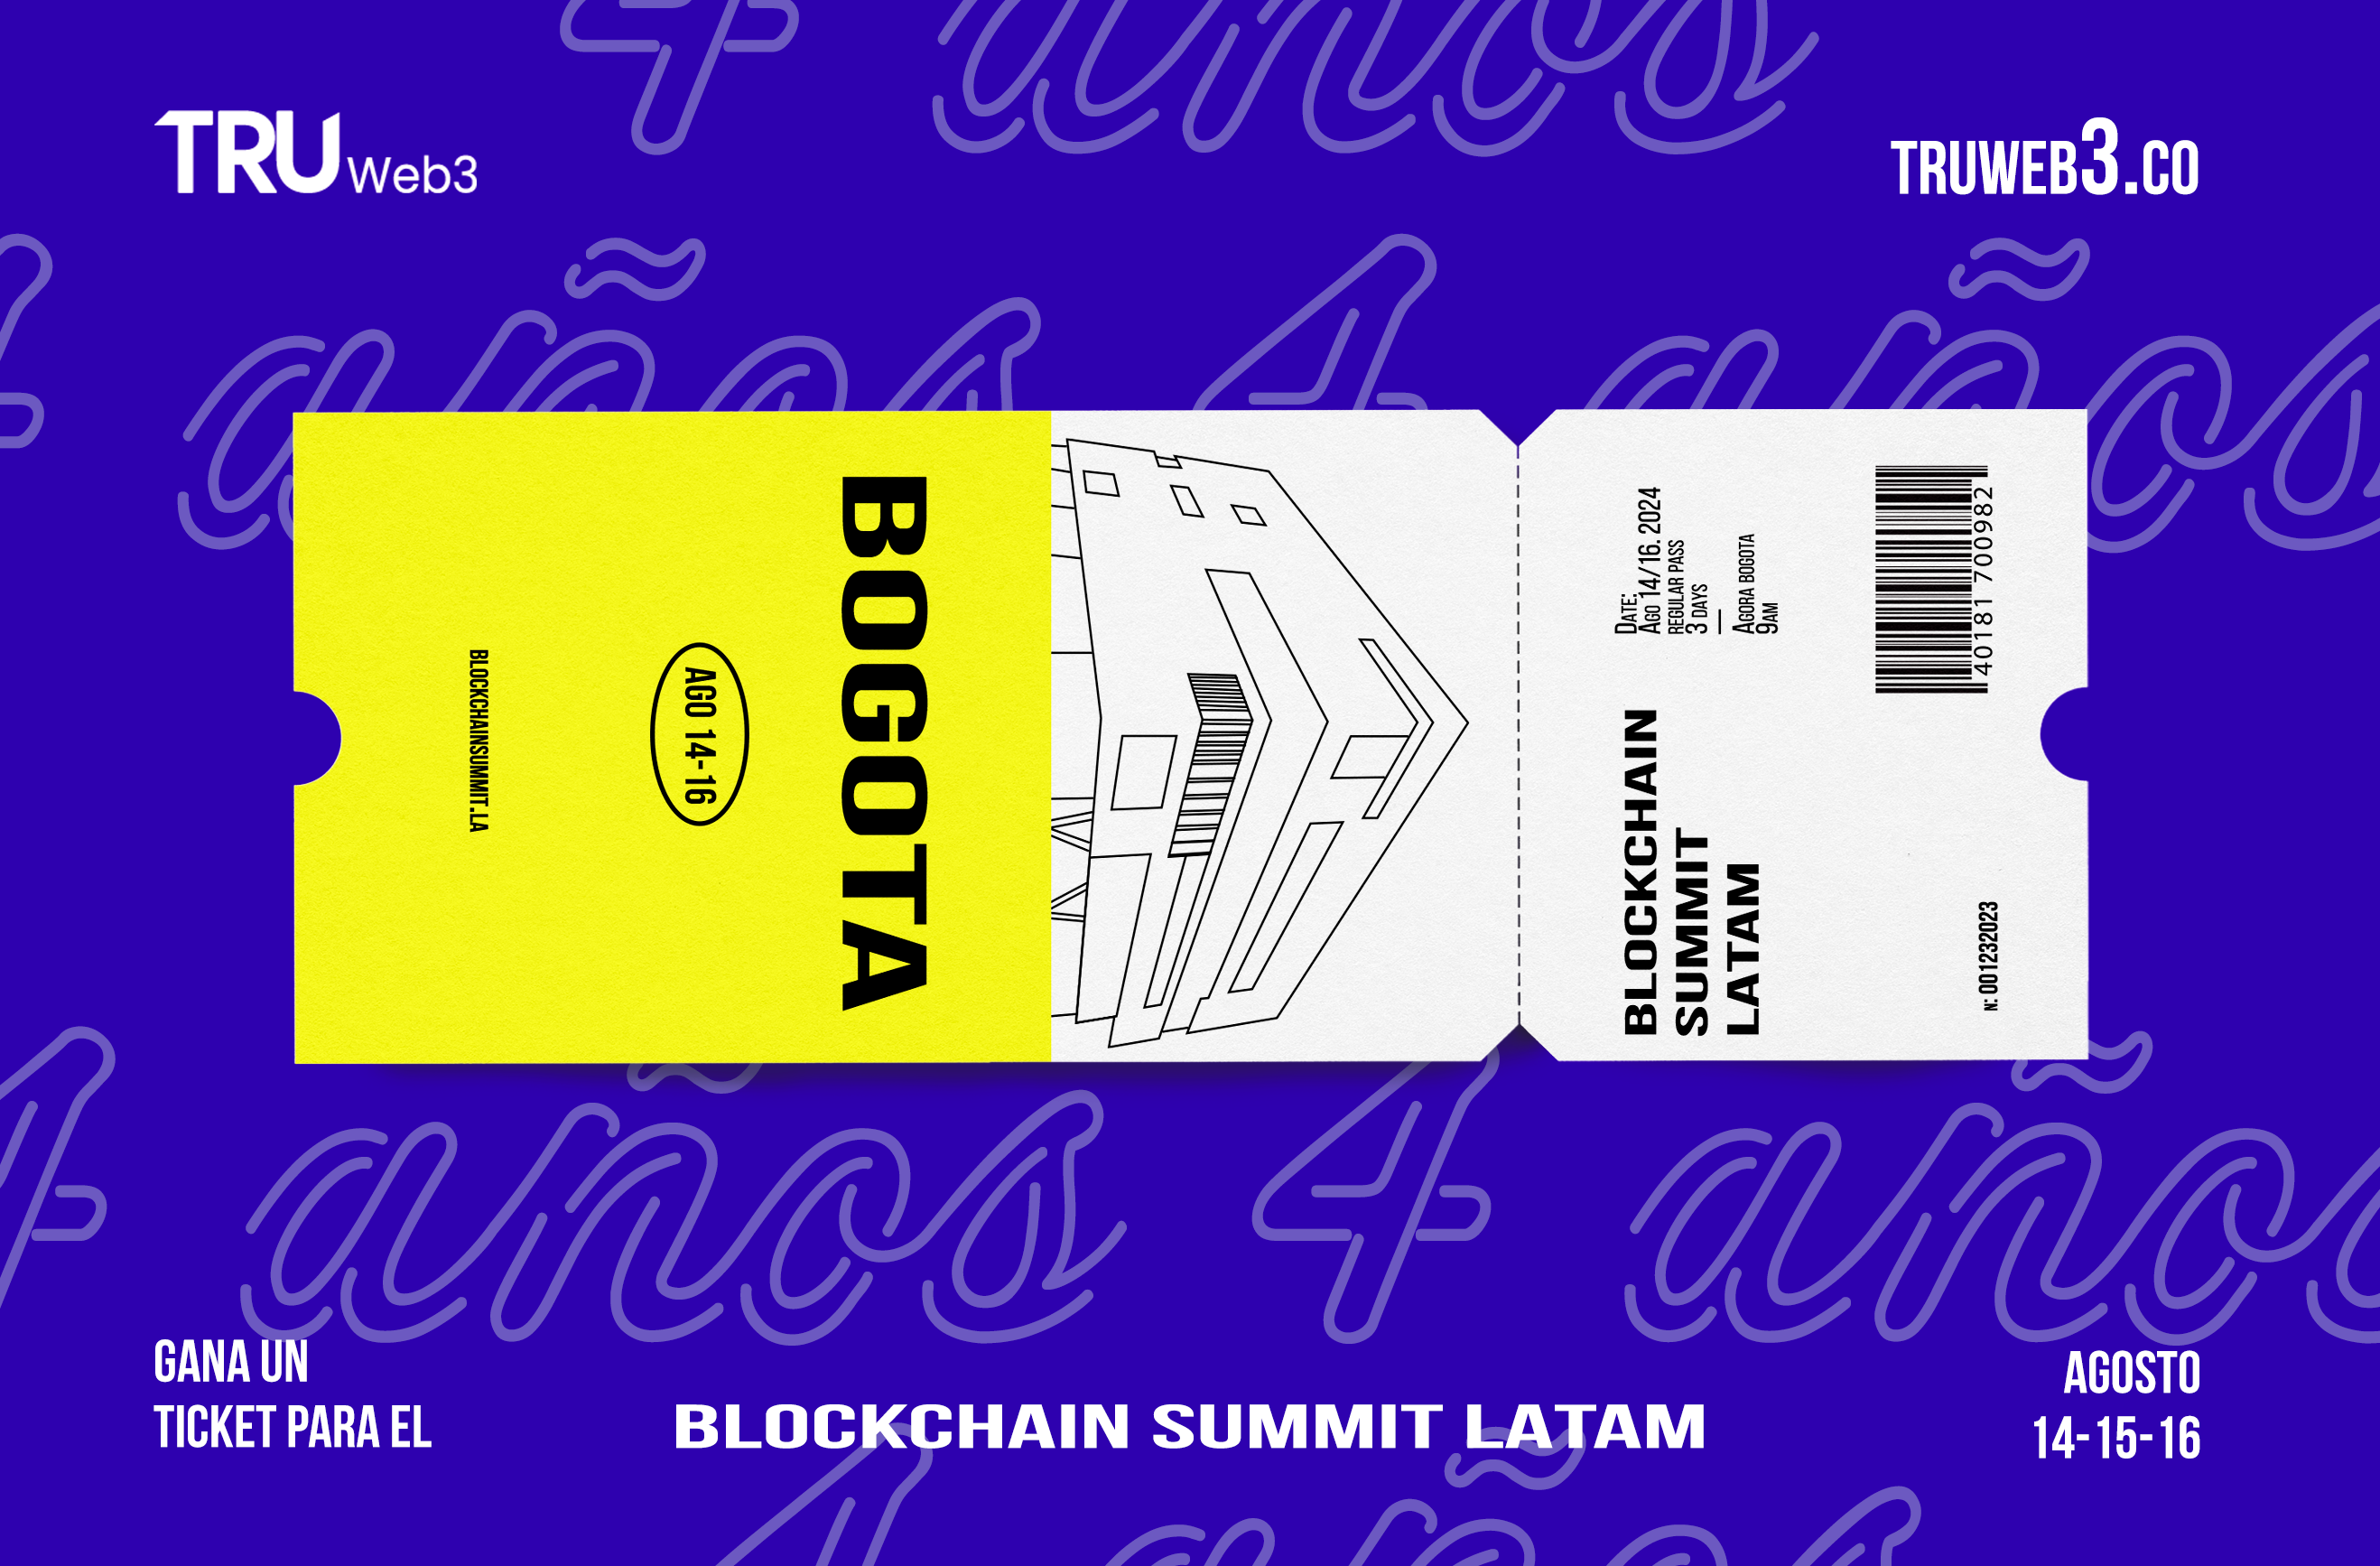 Truweb3 Celebra 4 Años en el Ecosistema Blockchain Regalando Accesos al Blockchain Summit Latam